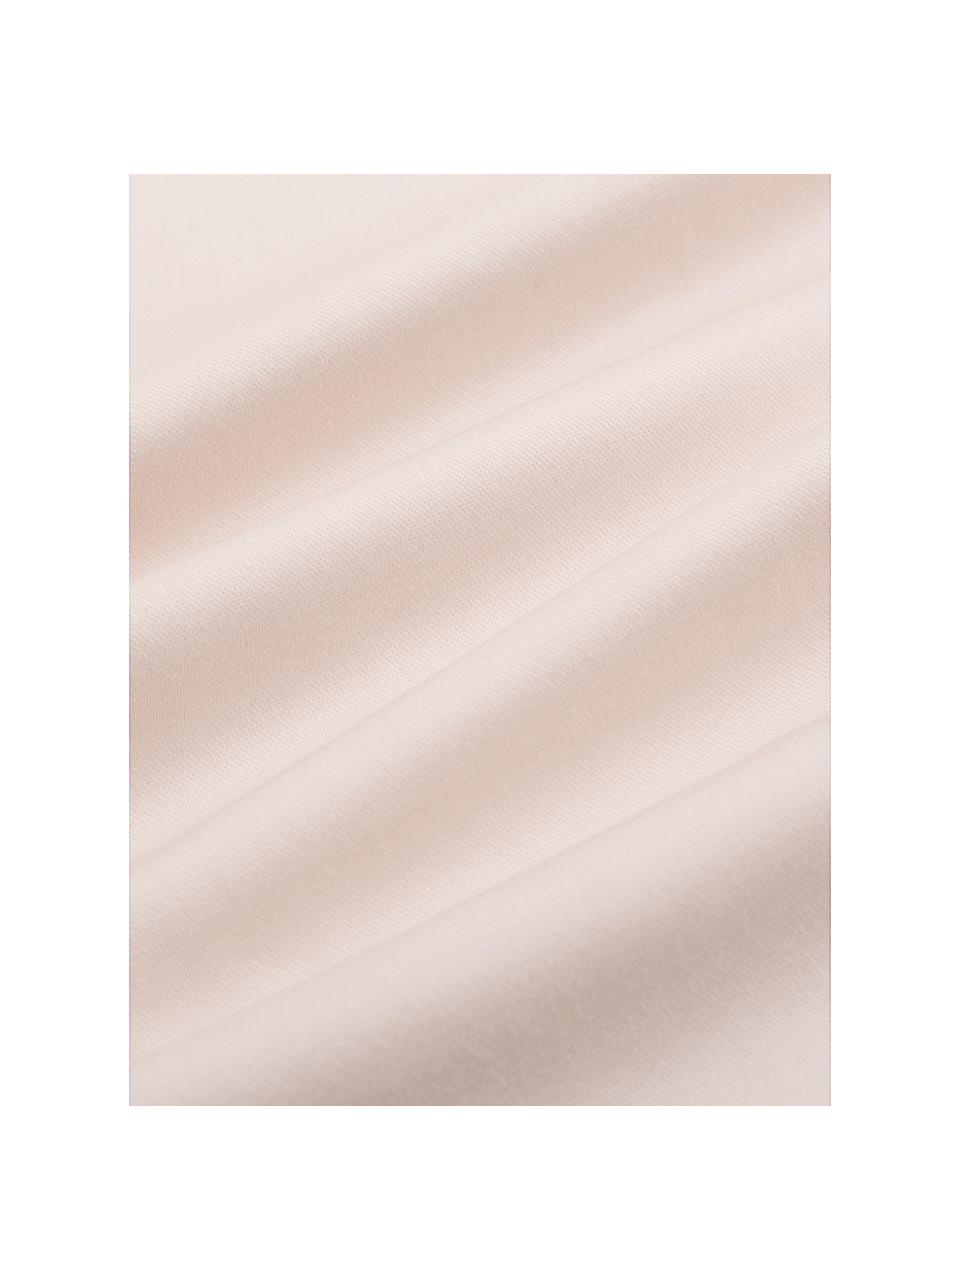 Baumwollsatin-Bettdeckenbezug Premium in Rosa mit Stehsaum, Webart: Satin, leicht glänzend Fa, Rosa, B 160 x L 210 cm